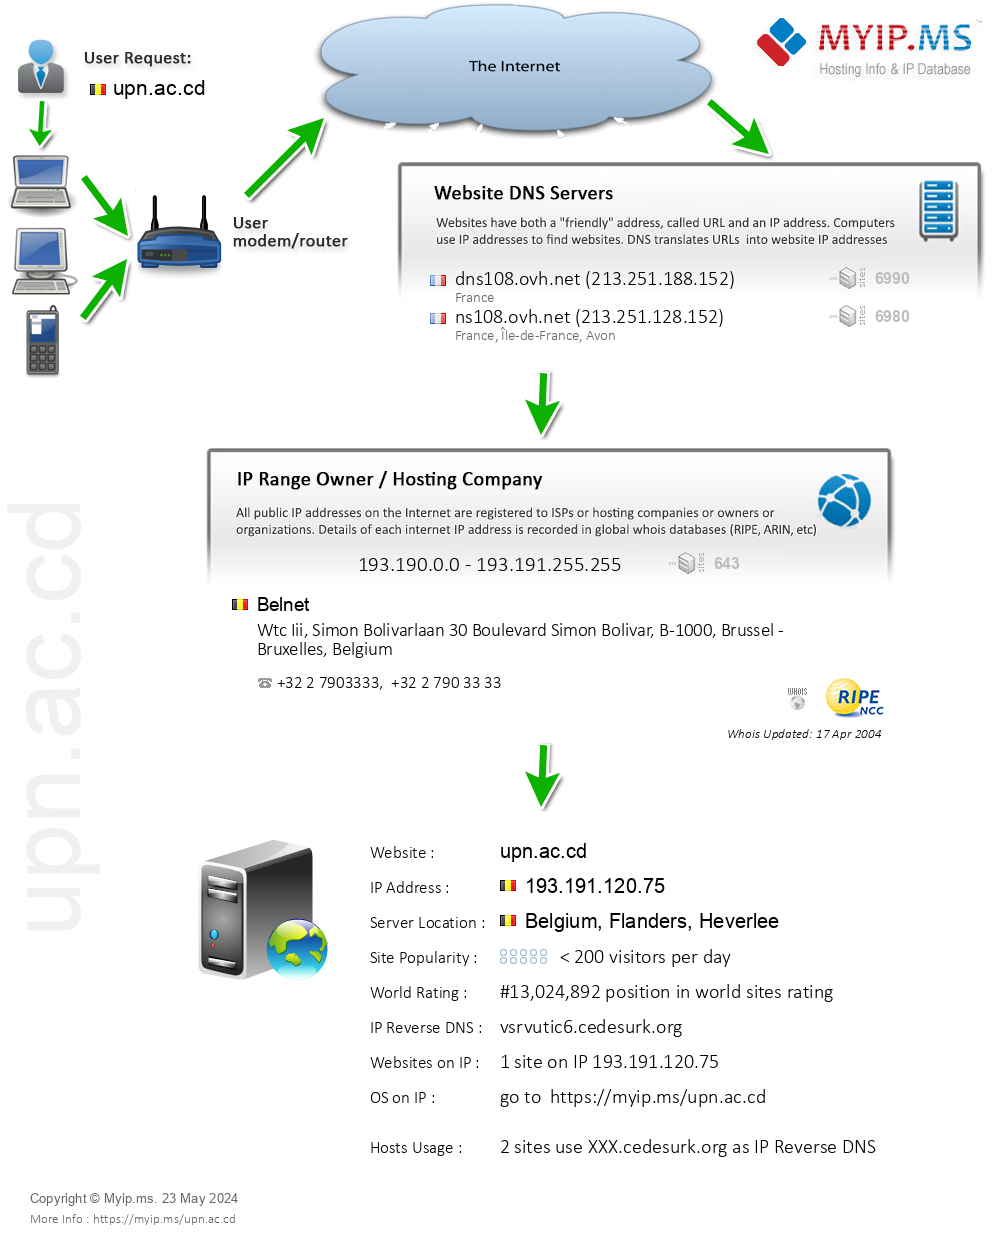 Upn.ac.cd - Website Hosting Visual IP Diagram